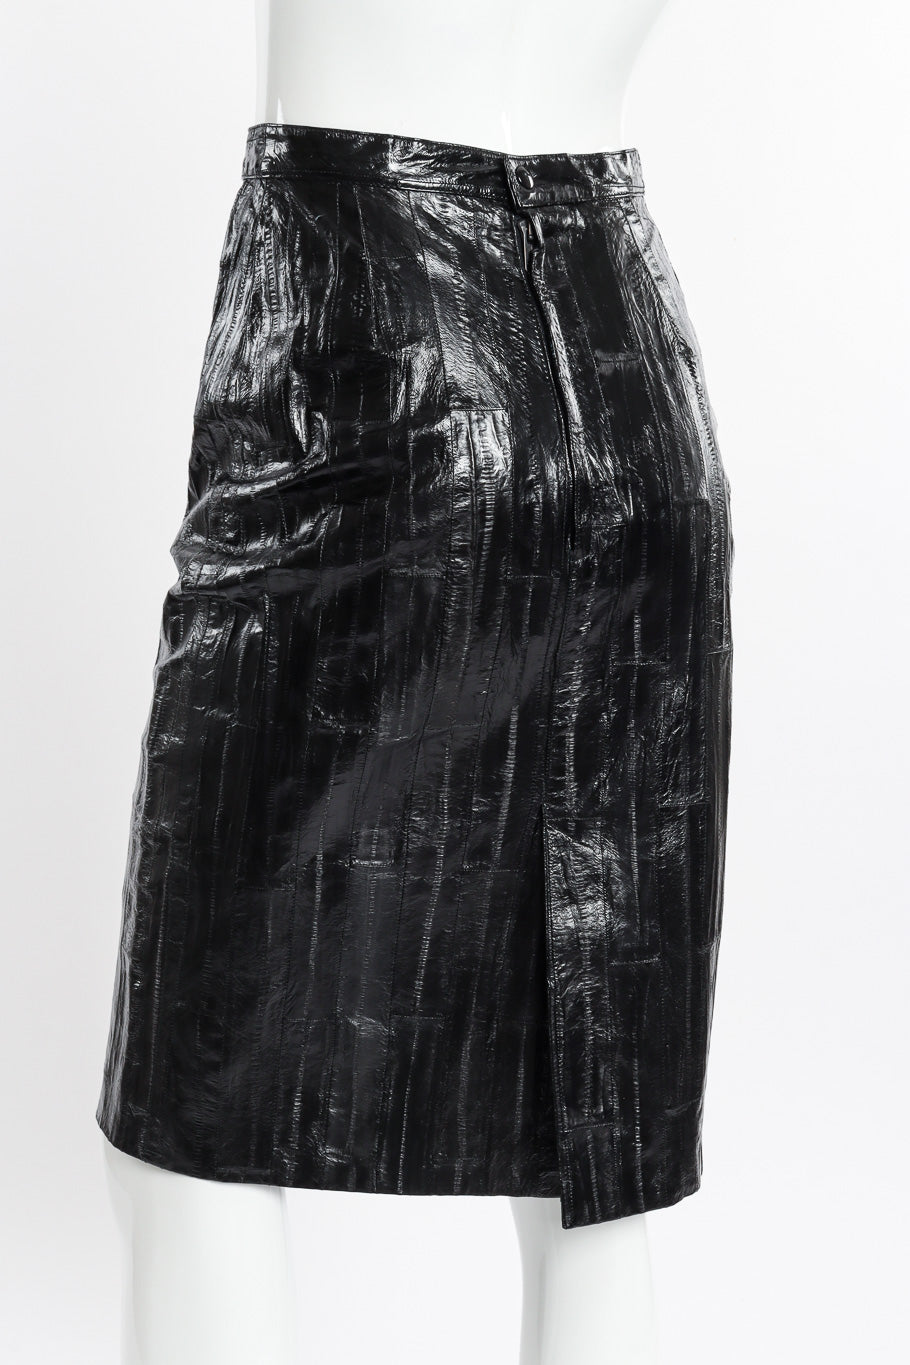 Vintage Krizia Eel Patent Leather Skirt back view on mannequin closeup @recessla